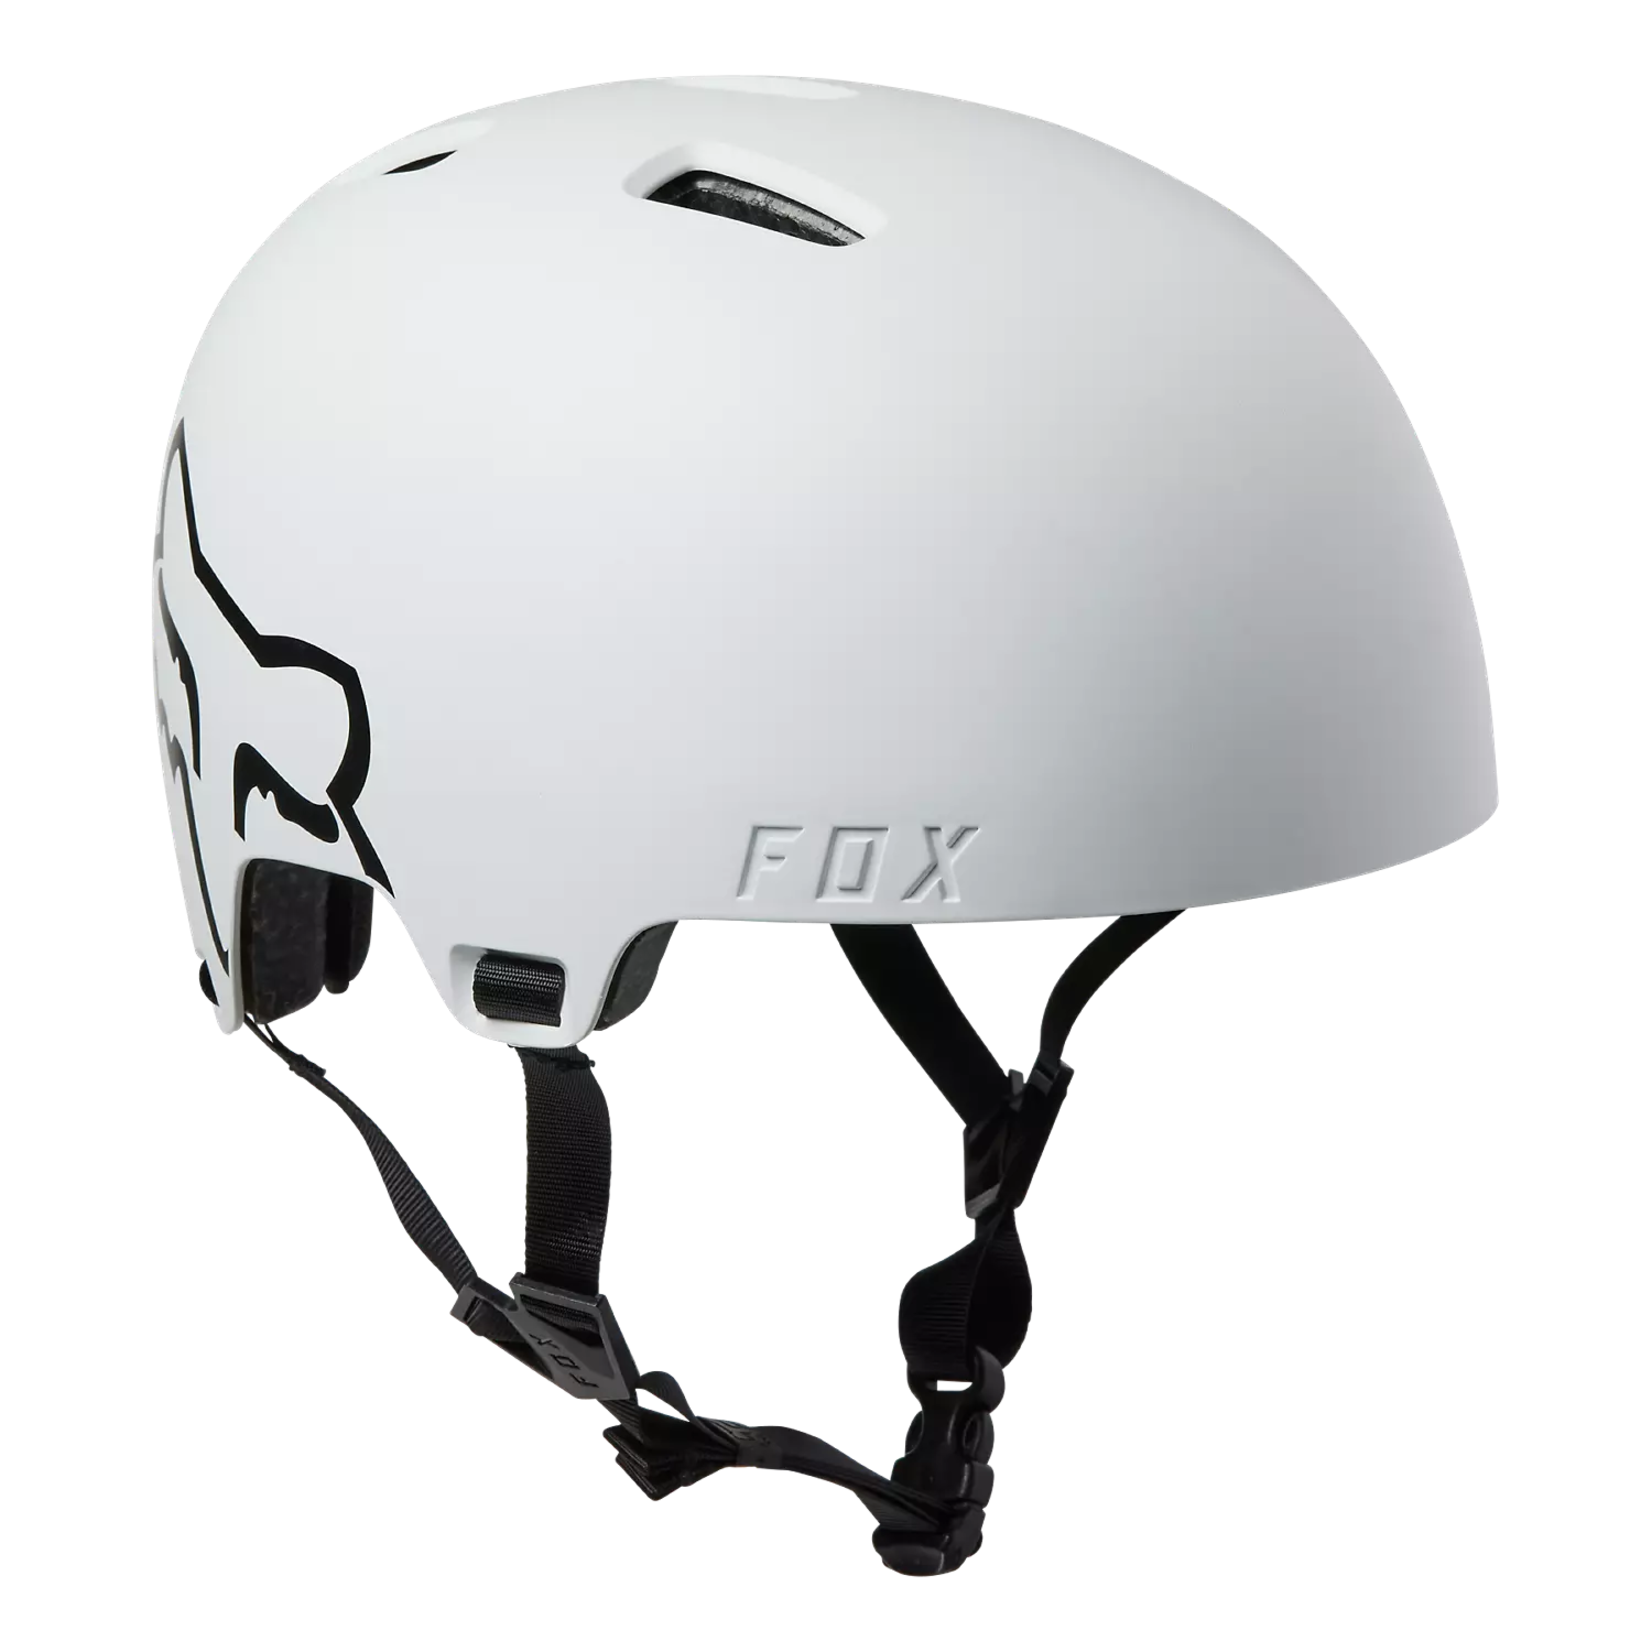 Fox FOX Helmet Flight - White